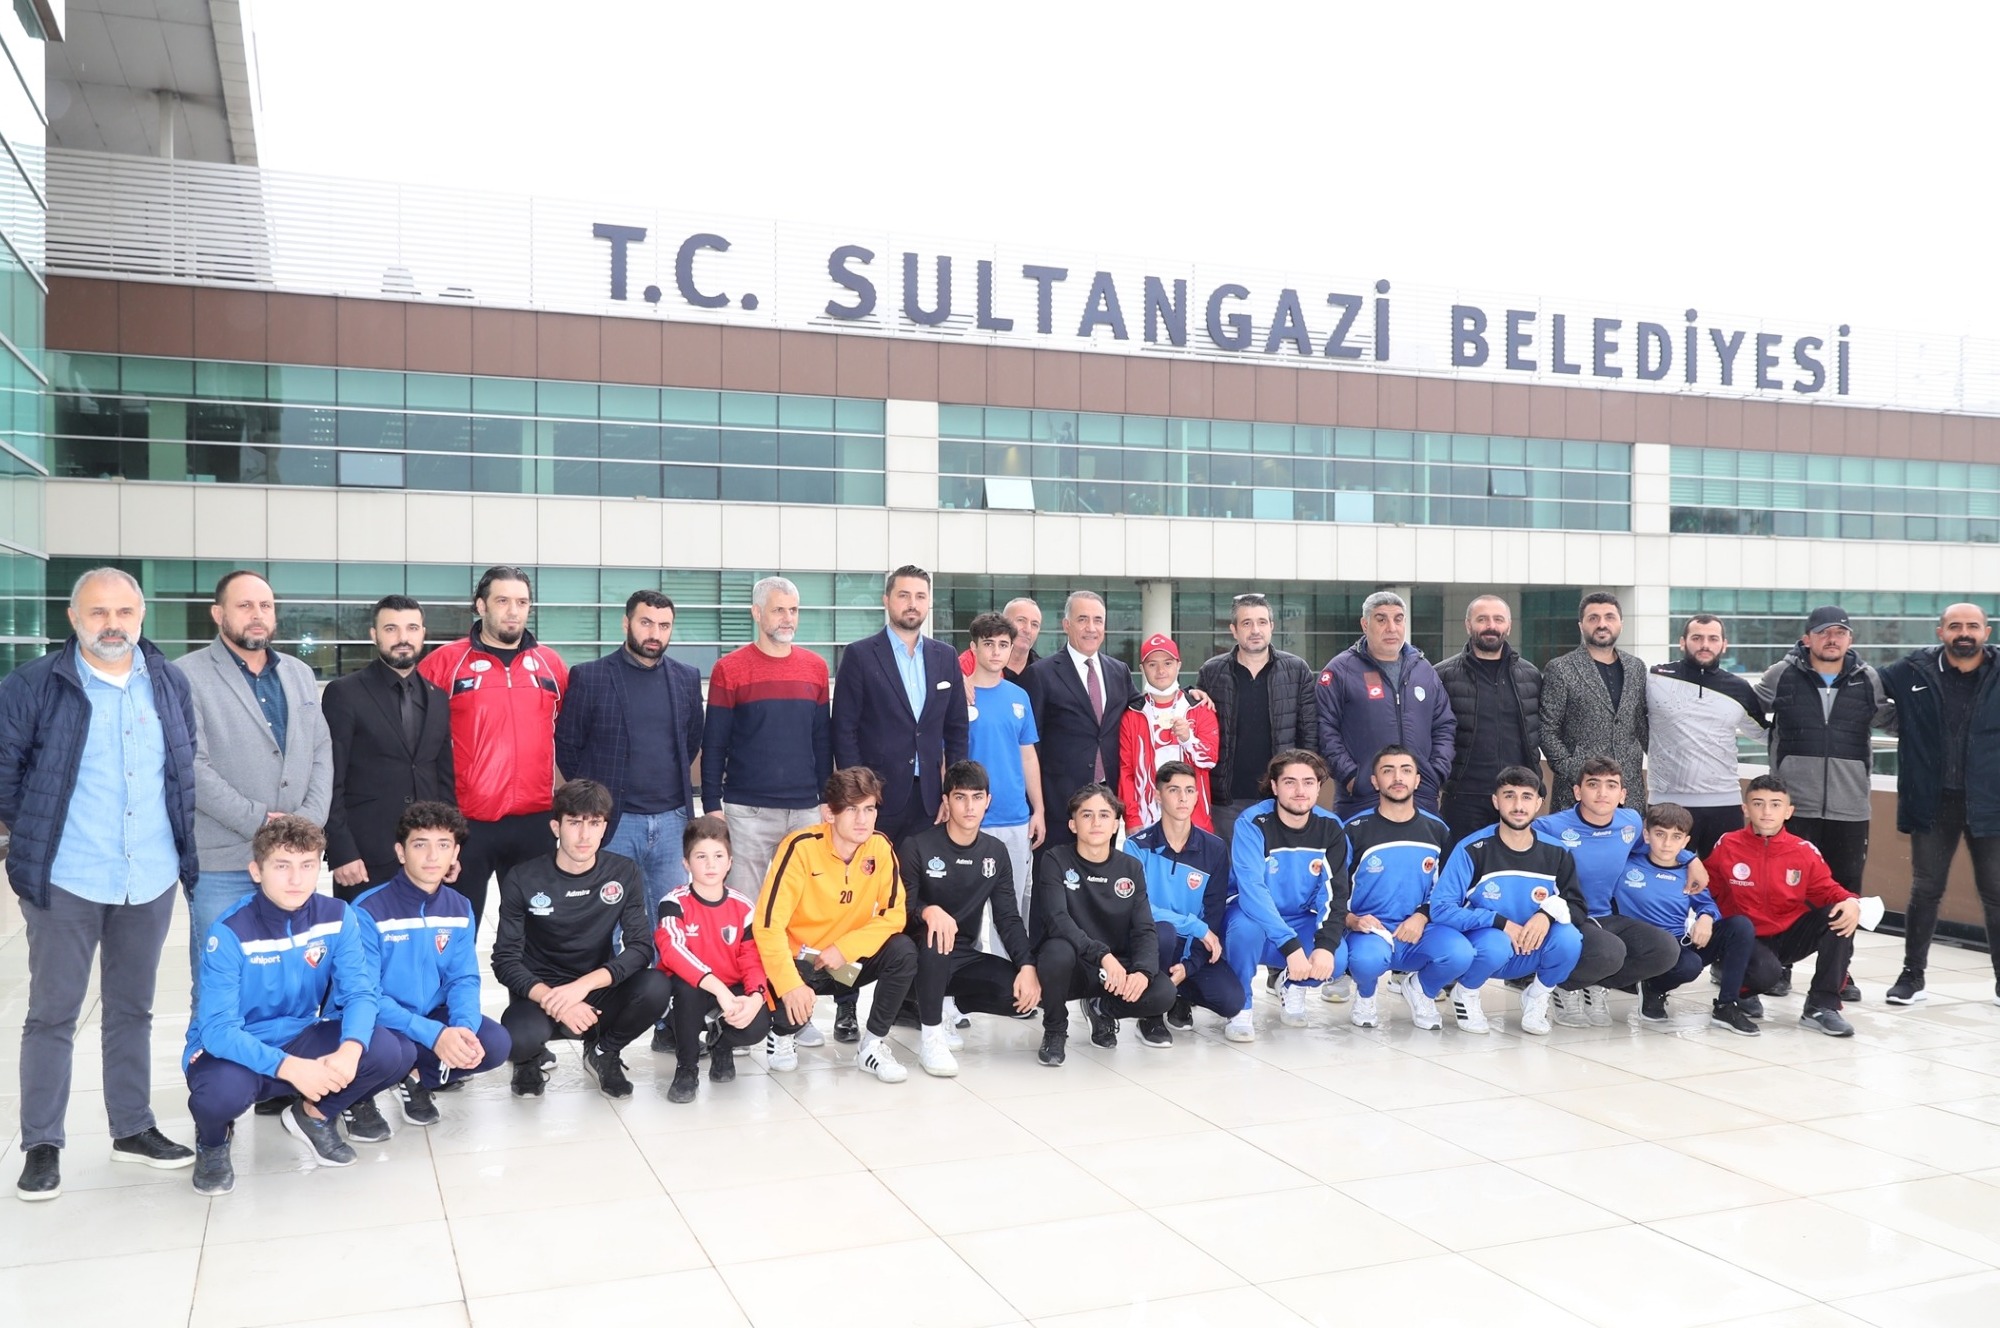 Sultangazi Belediyesi Amatör Spor Kulüpleri Futbol Turnuvası için Kuralar Çekildi